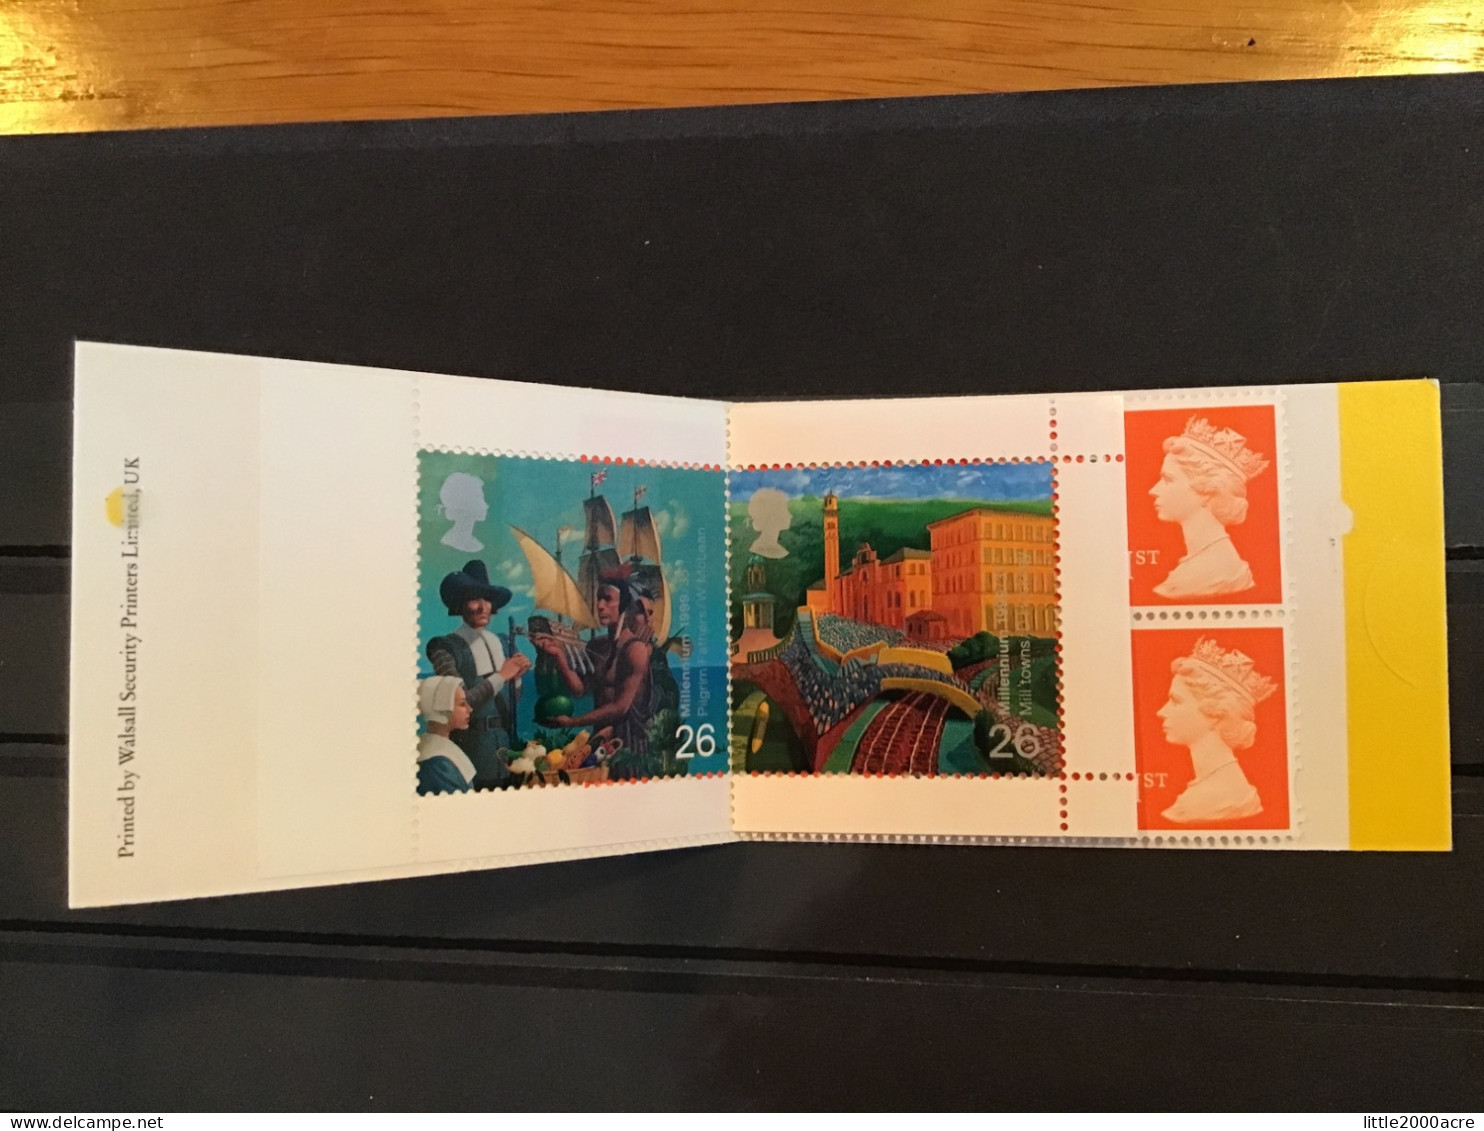 GB 1999 10 1st Class Stamps Barcode Booklet £2.60 MNH SG HBA1 - Markenheftchen